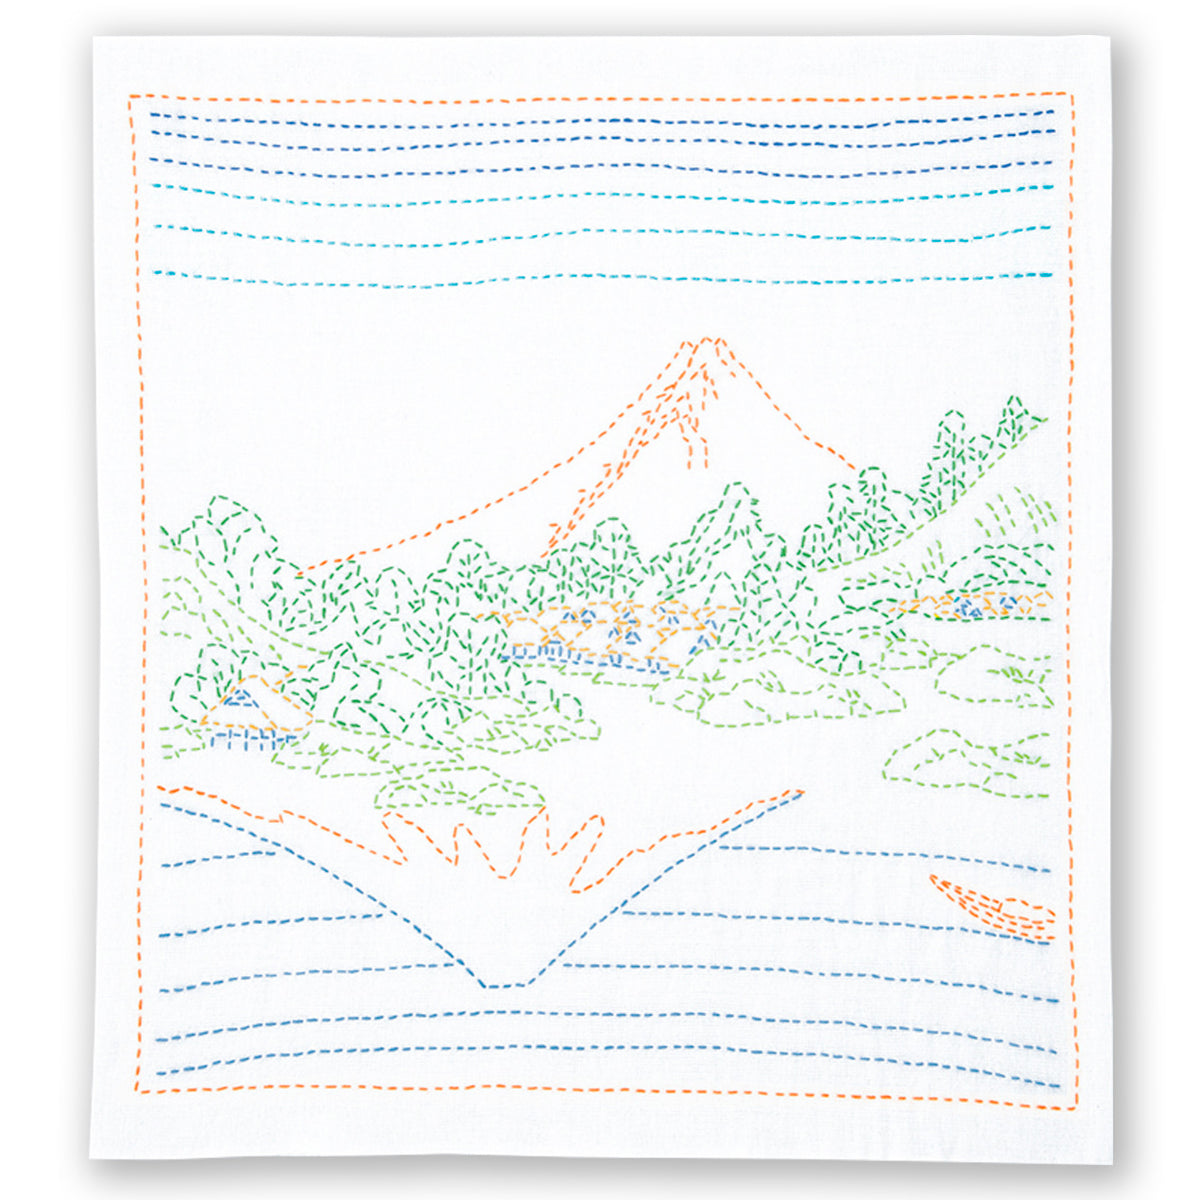 Views of Mt. Fuji Sashiko Embroidery Kit - Upside Down Fuji